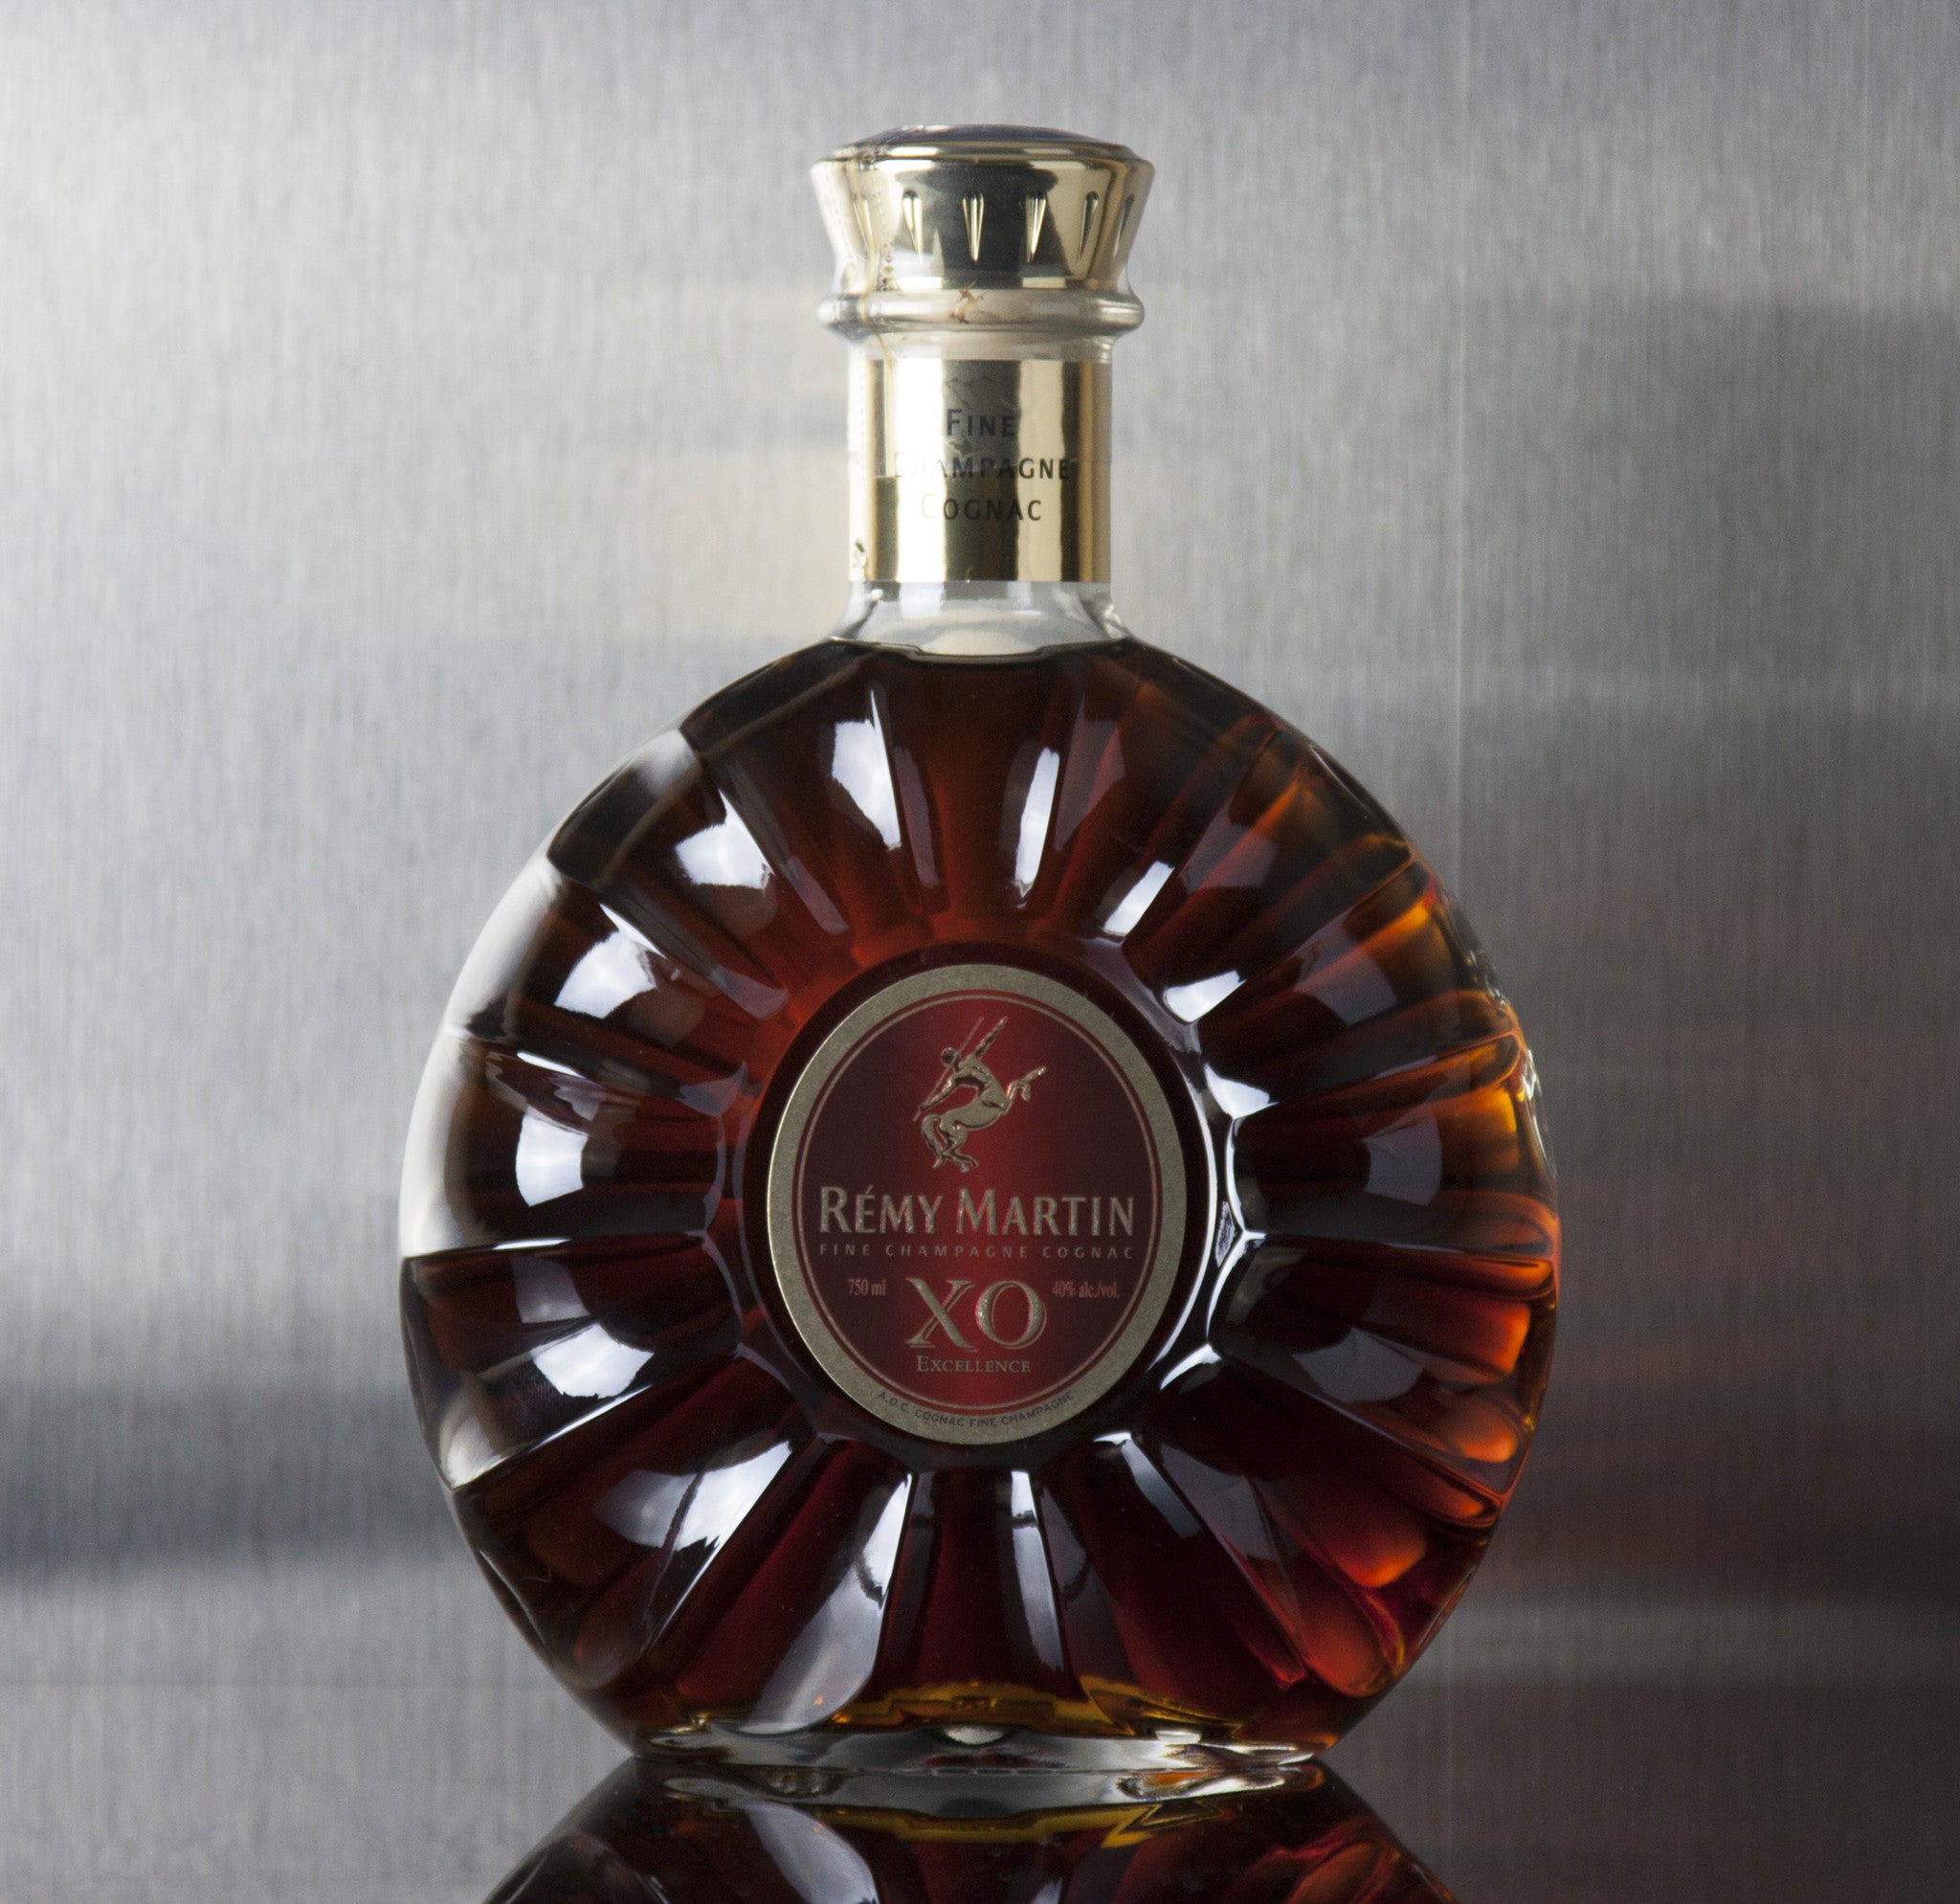 Remy Martin X.O Excellence Cognac 750 ml